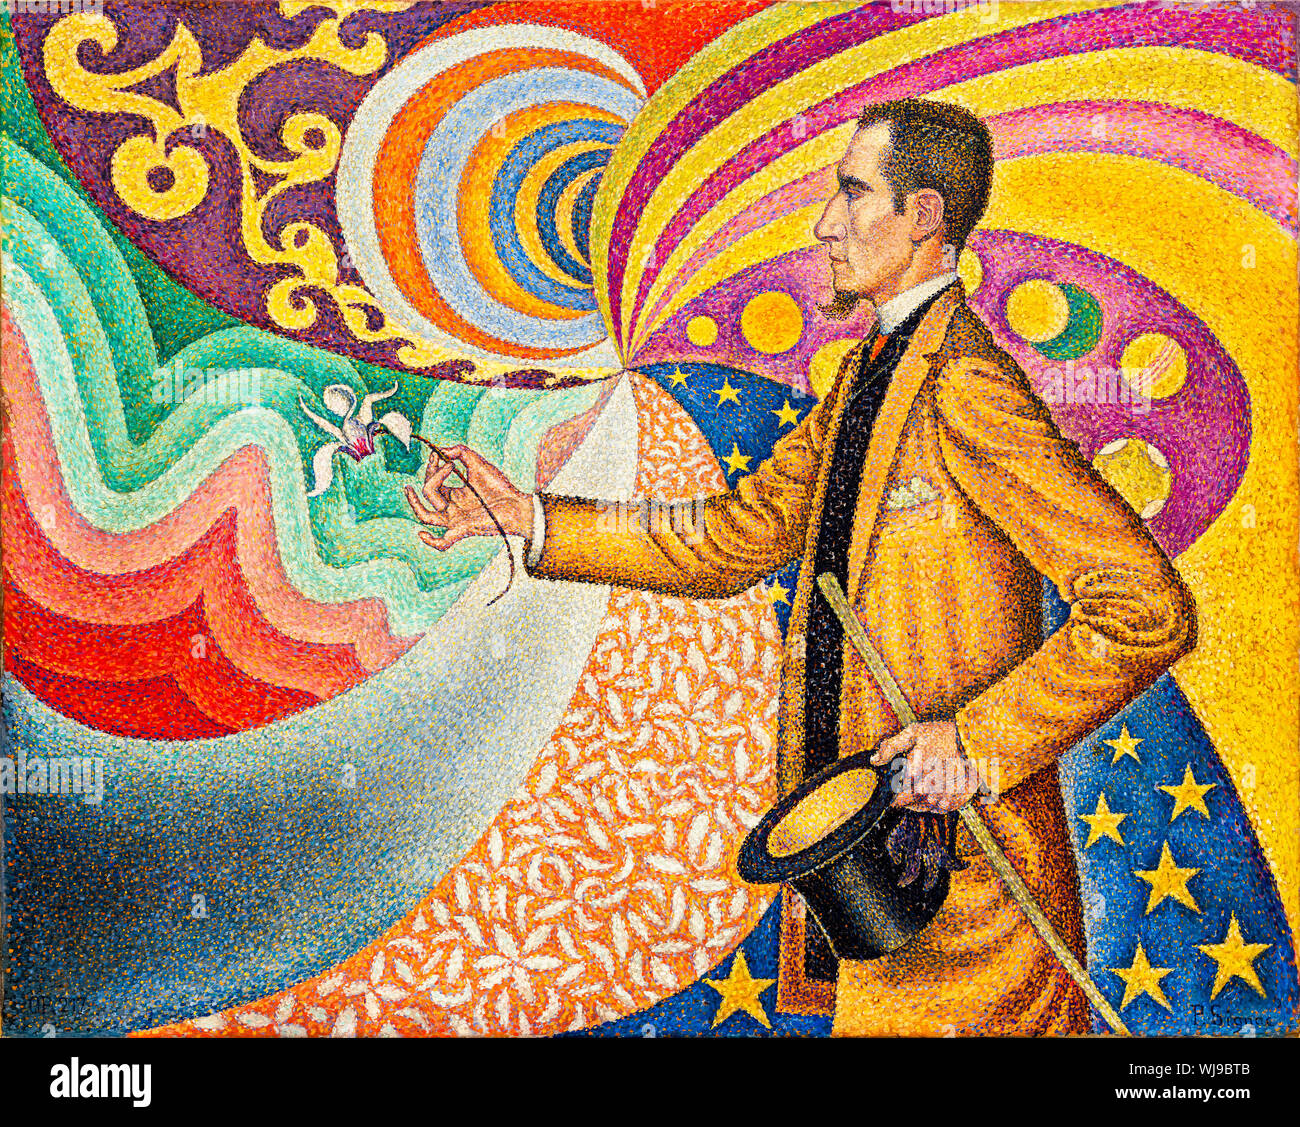 Paul Signac, pintura de retrato, Opus 217, Contra el esmalte de un fondo rítmico con latidos y ángulos, tonos y tintes, Retrato de M. Félix Fénéon en 1890, 1890, pintura neo-impresionista - arte moderno Foto de stock